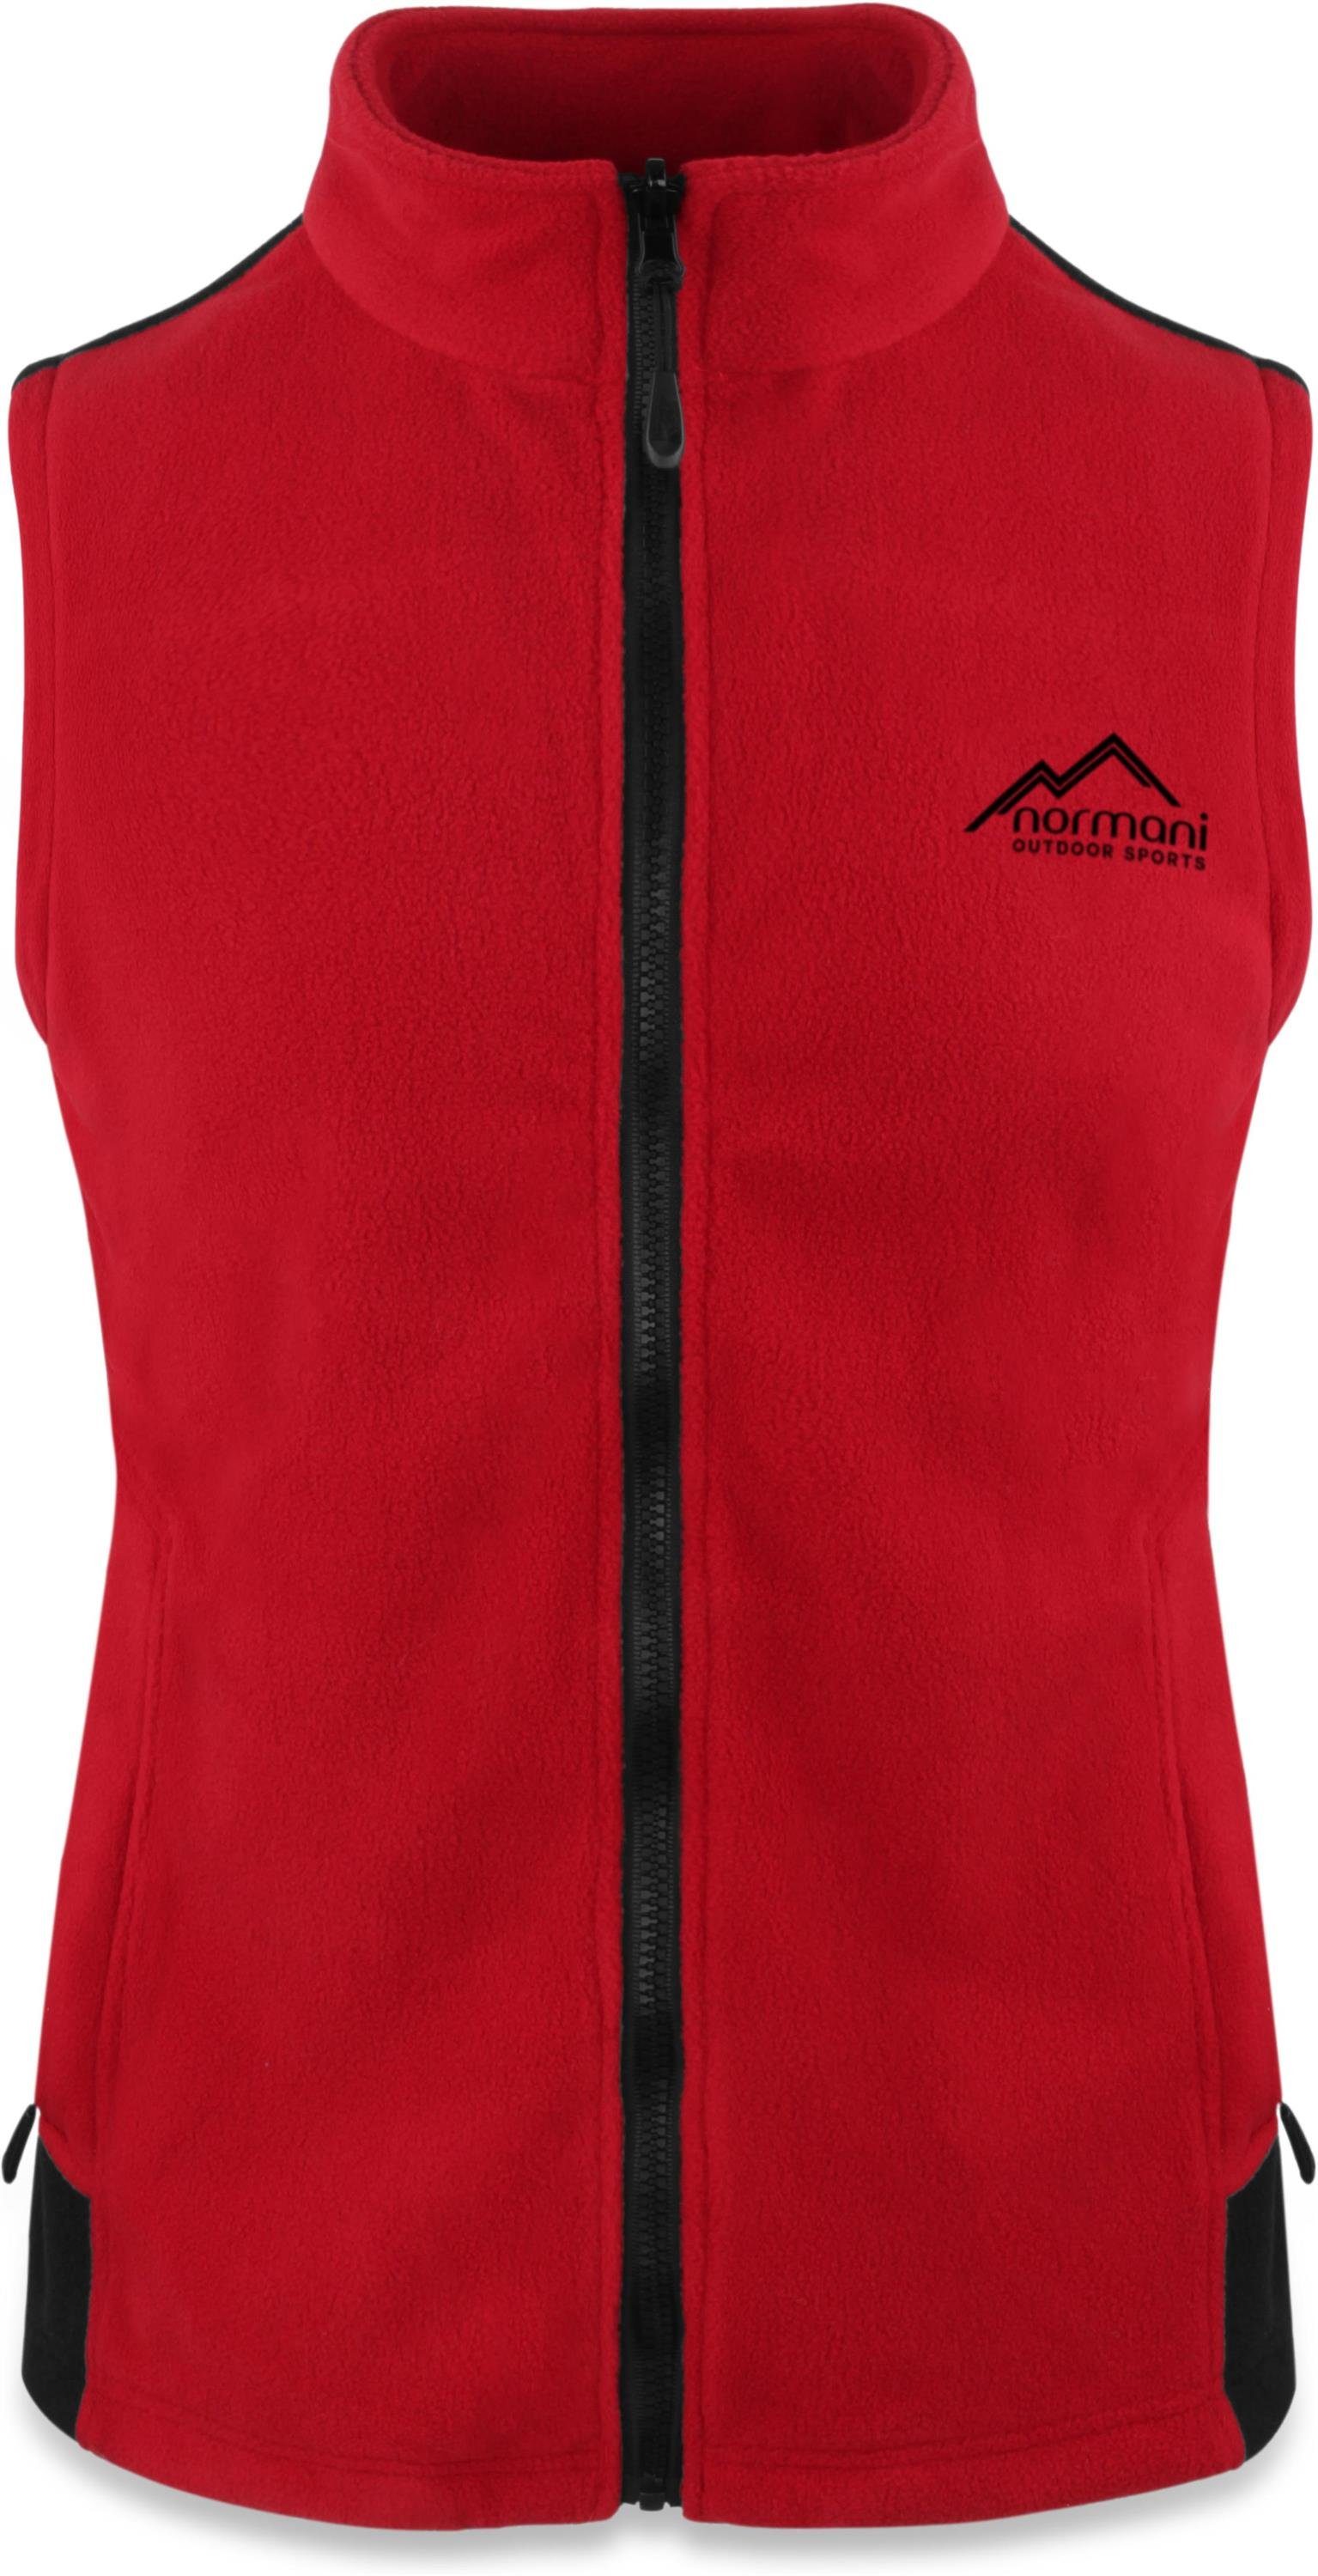 normani Fleeceweste Damen Fleeceweste Barrie Übergangsweste mit Reißverschlusstaschen und Stehkragen, Ärmellose Jacke - 280 g/m² Rot